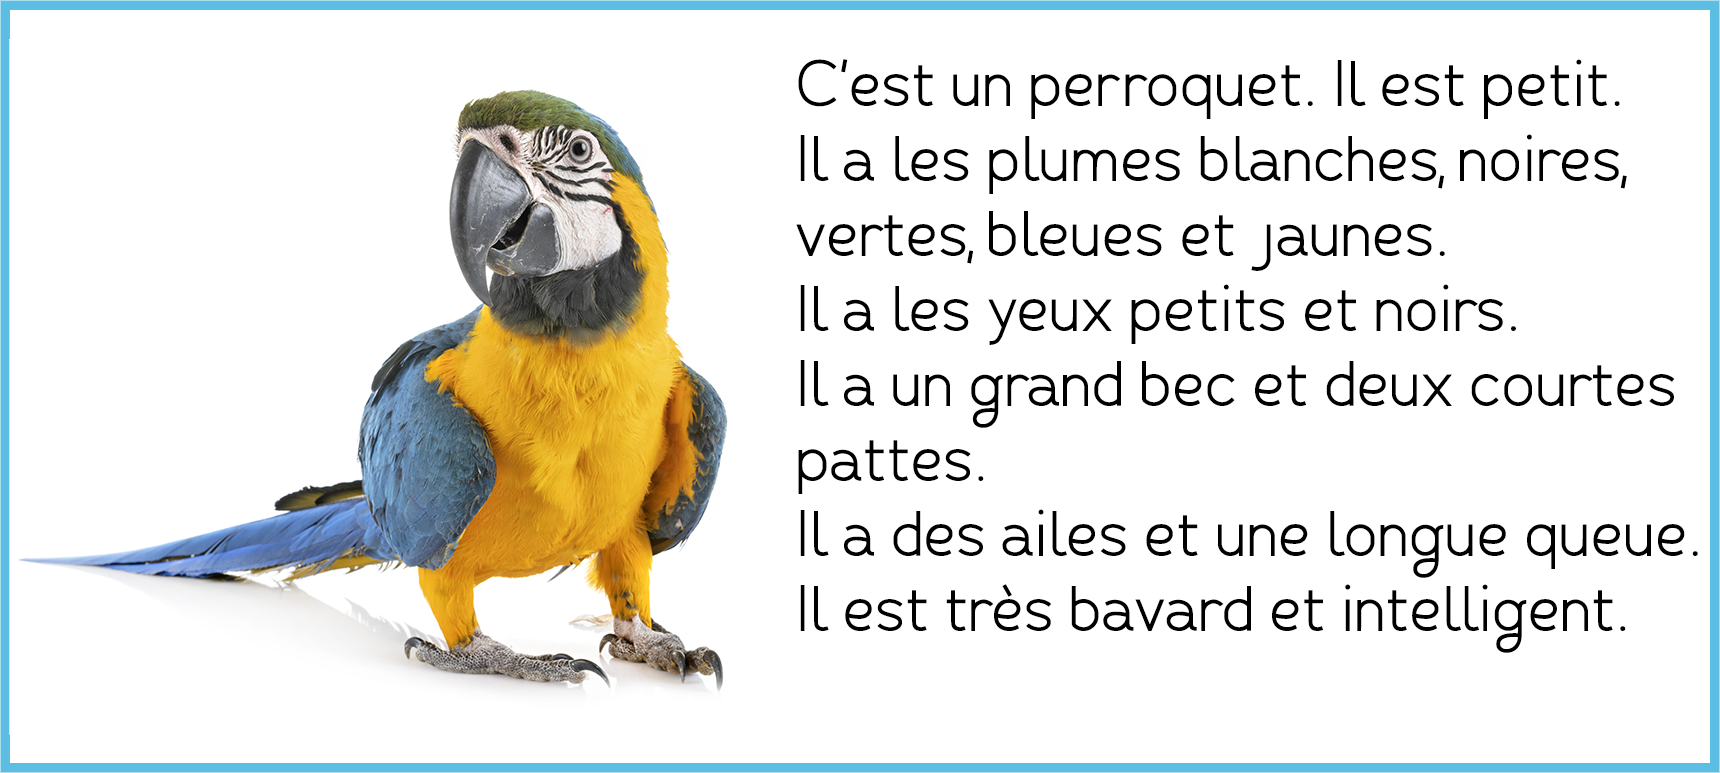 https://xn--pequesfranais-rgb.com/la-description-des-animaux/